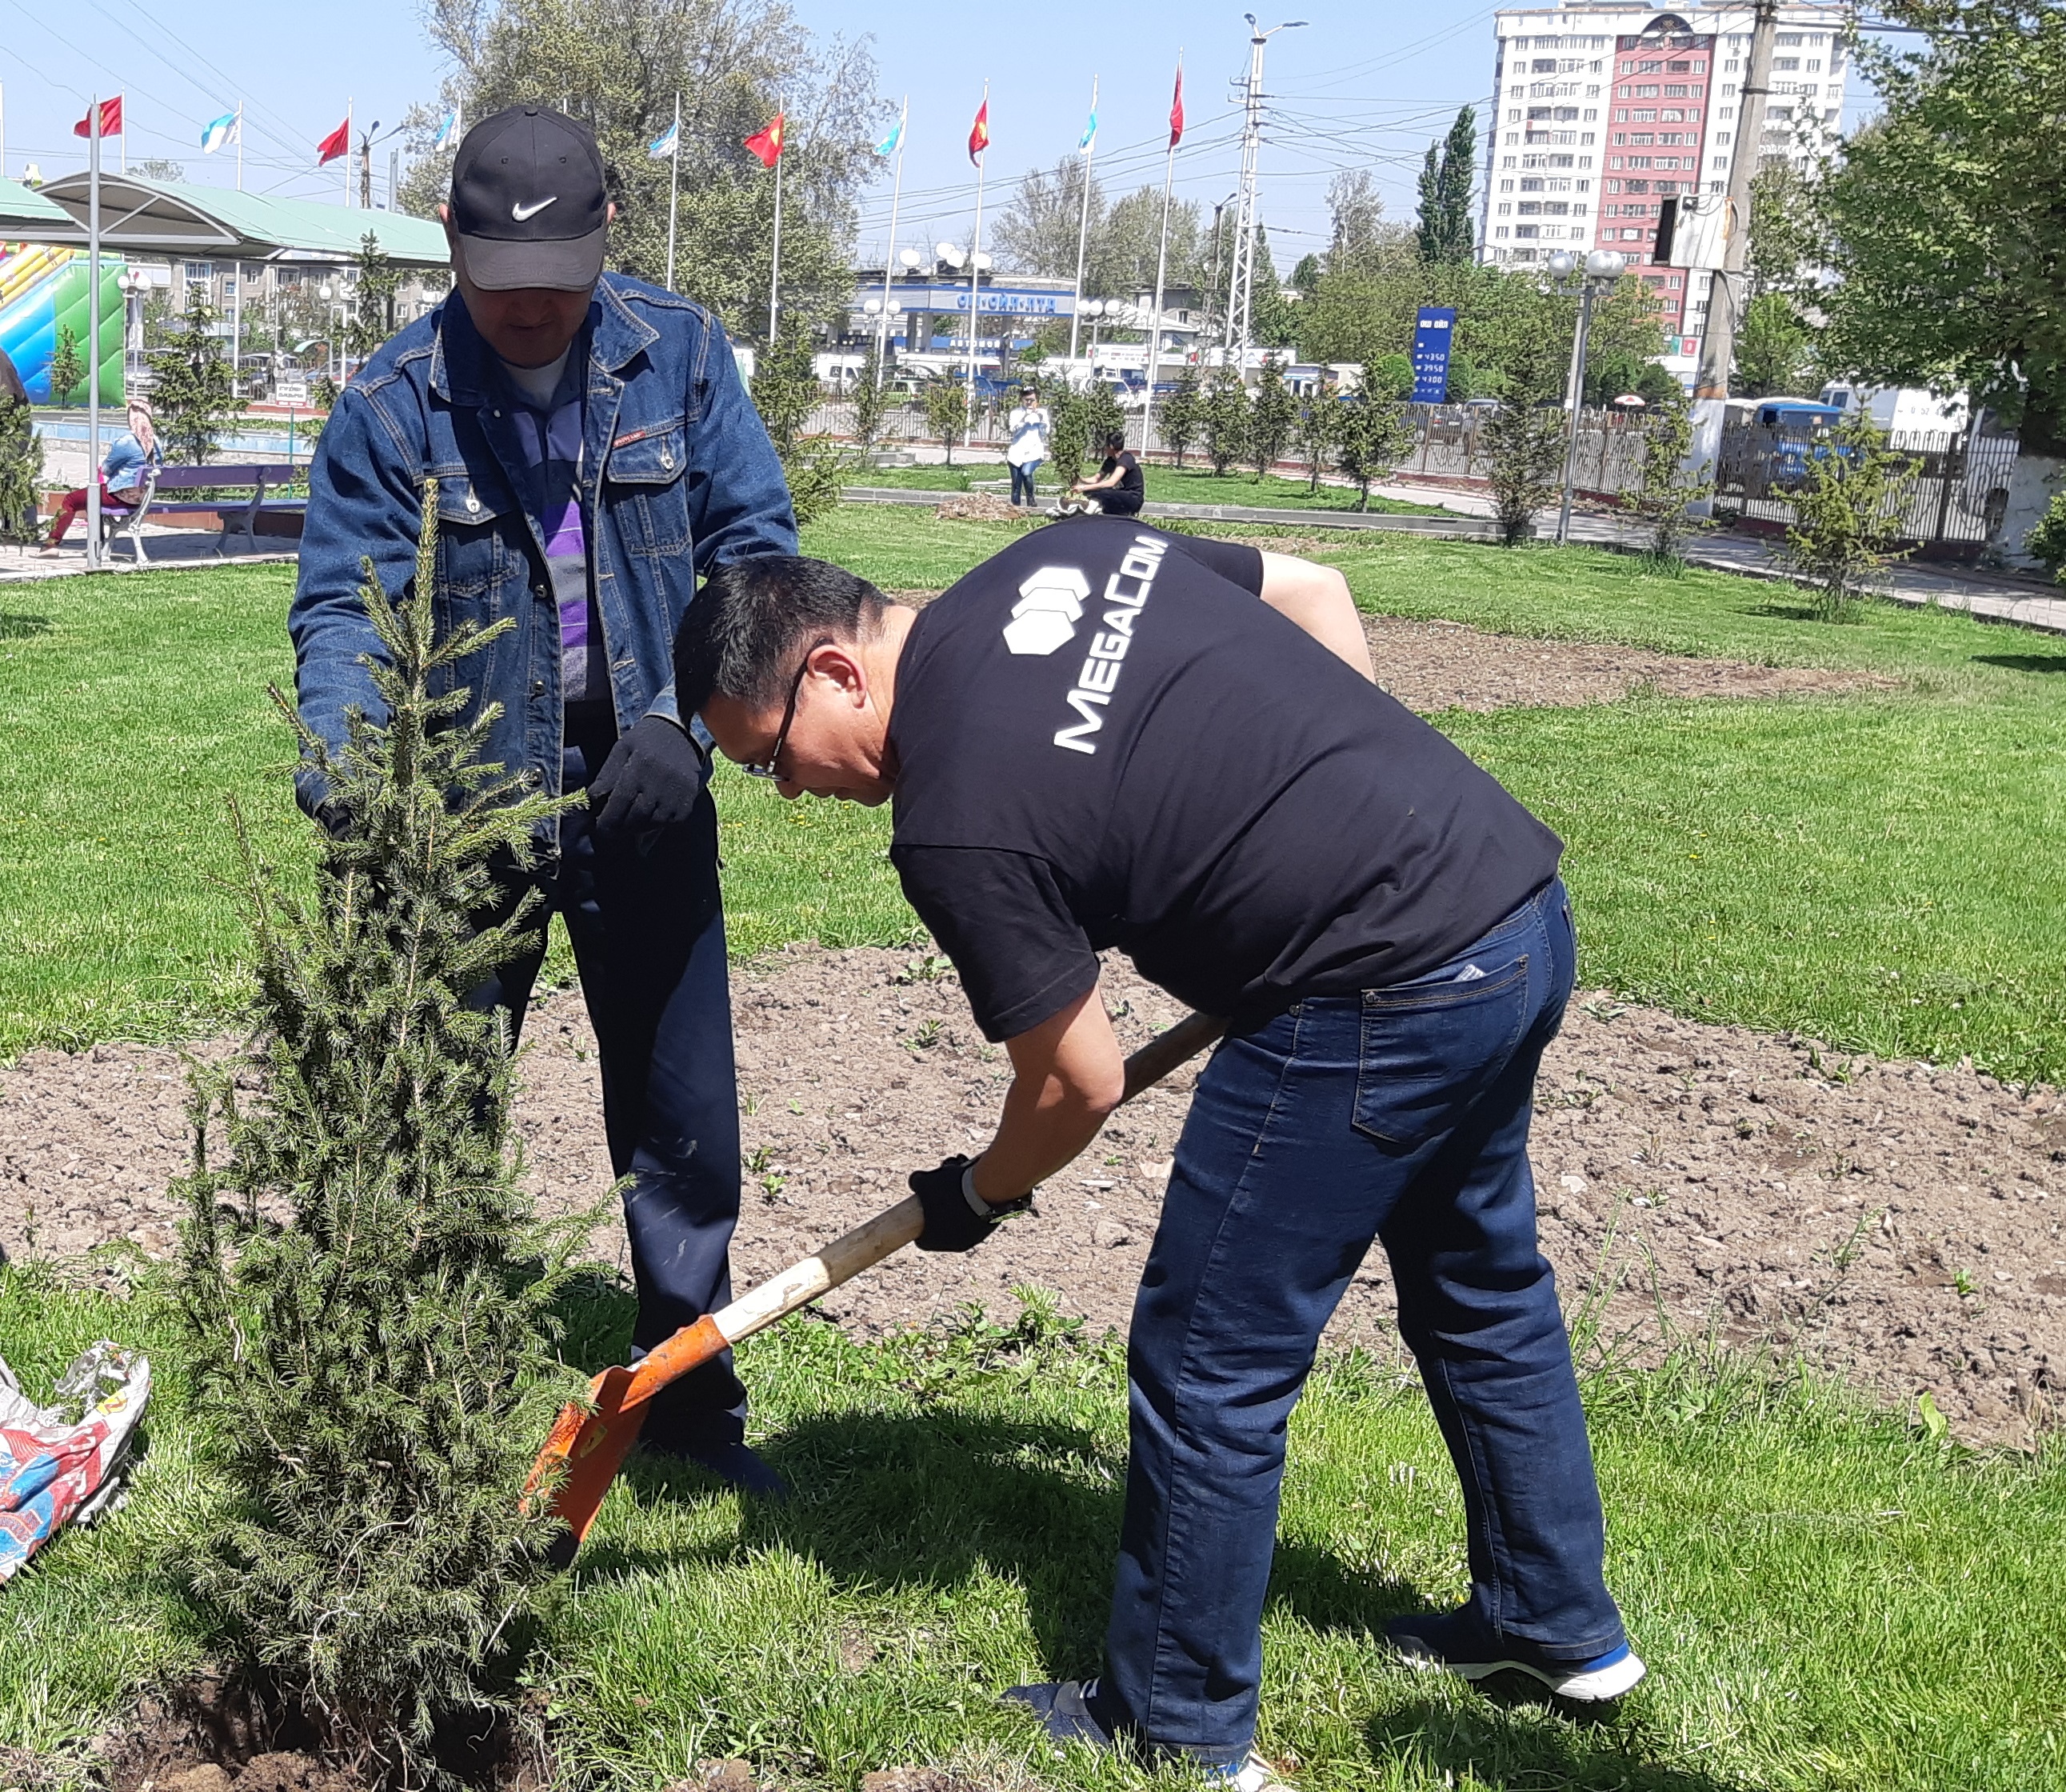 В минувшую субботу, 21 апреля, в городах Бишкек и Ош состоялись субботники с участием сотрудников MegaCom во главе с руководством компании.

